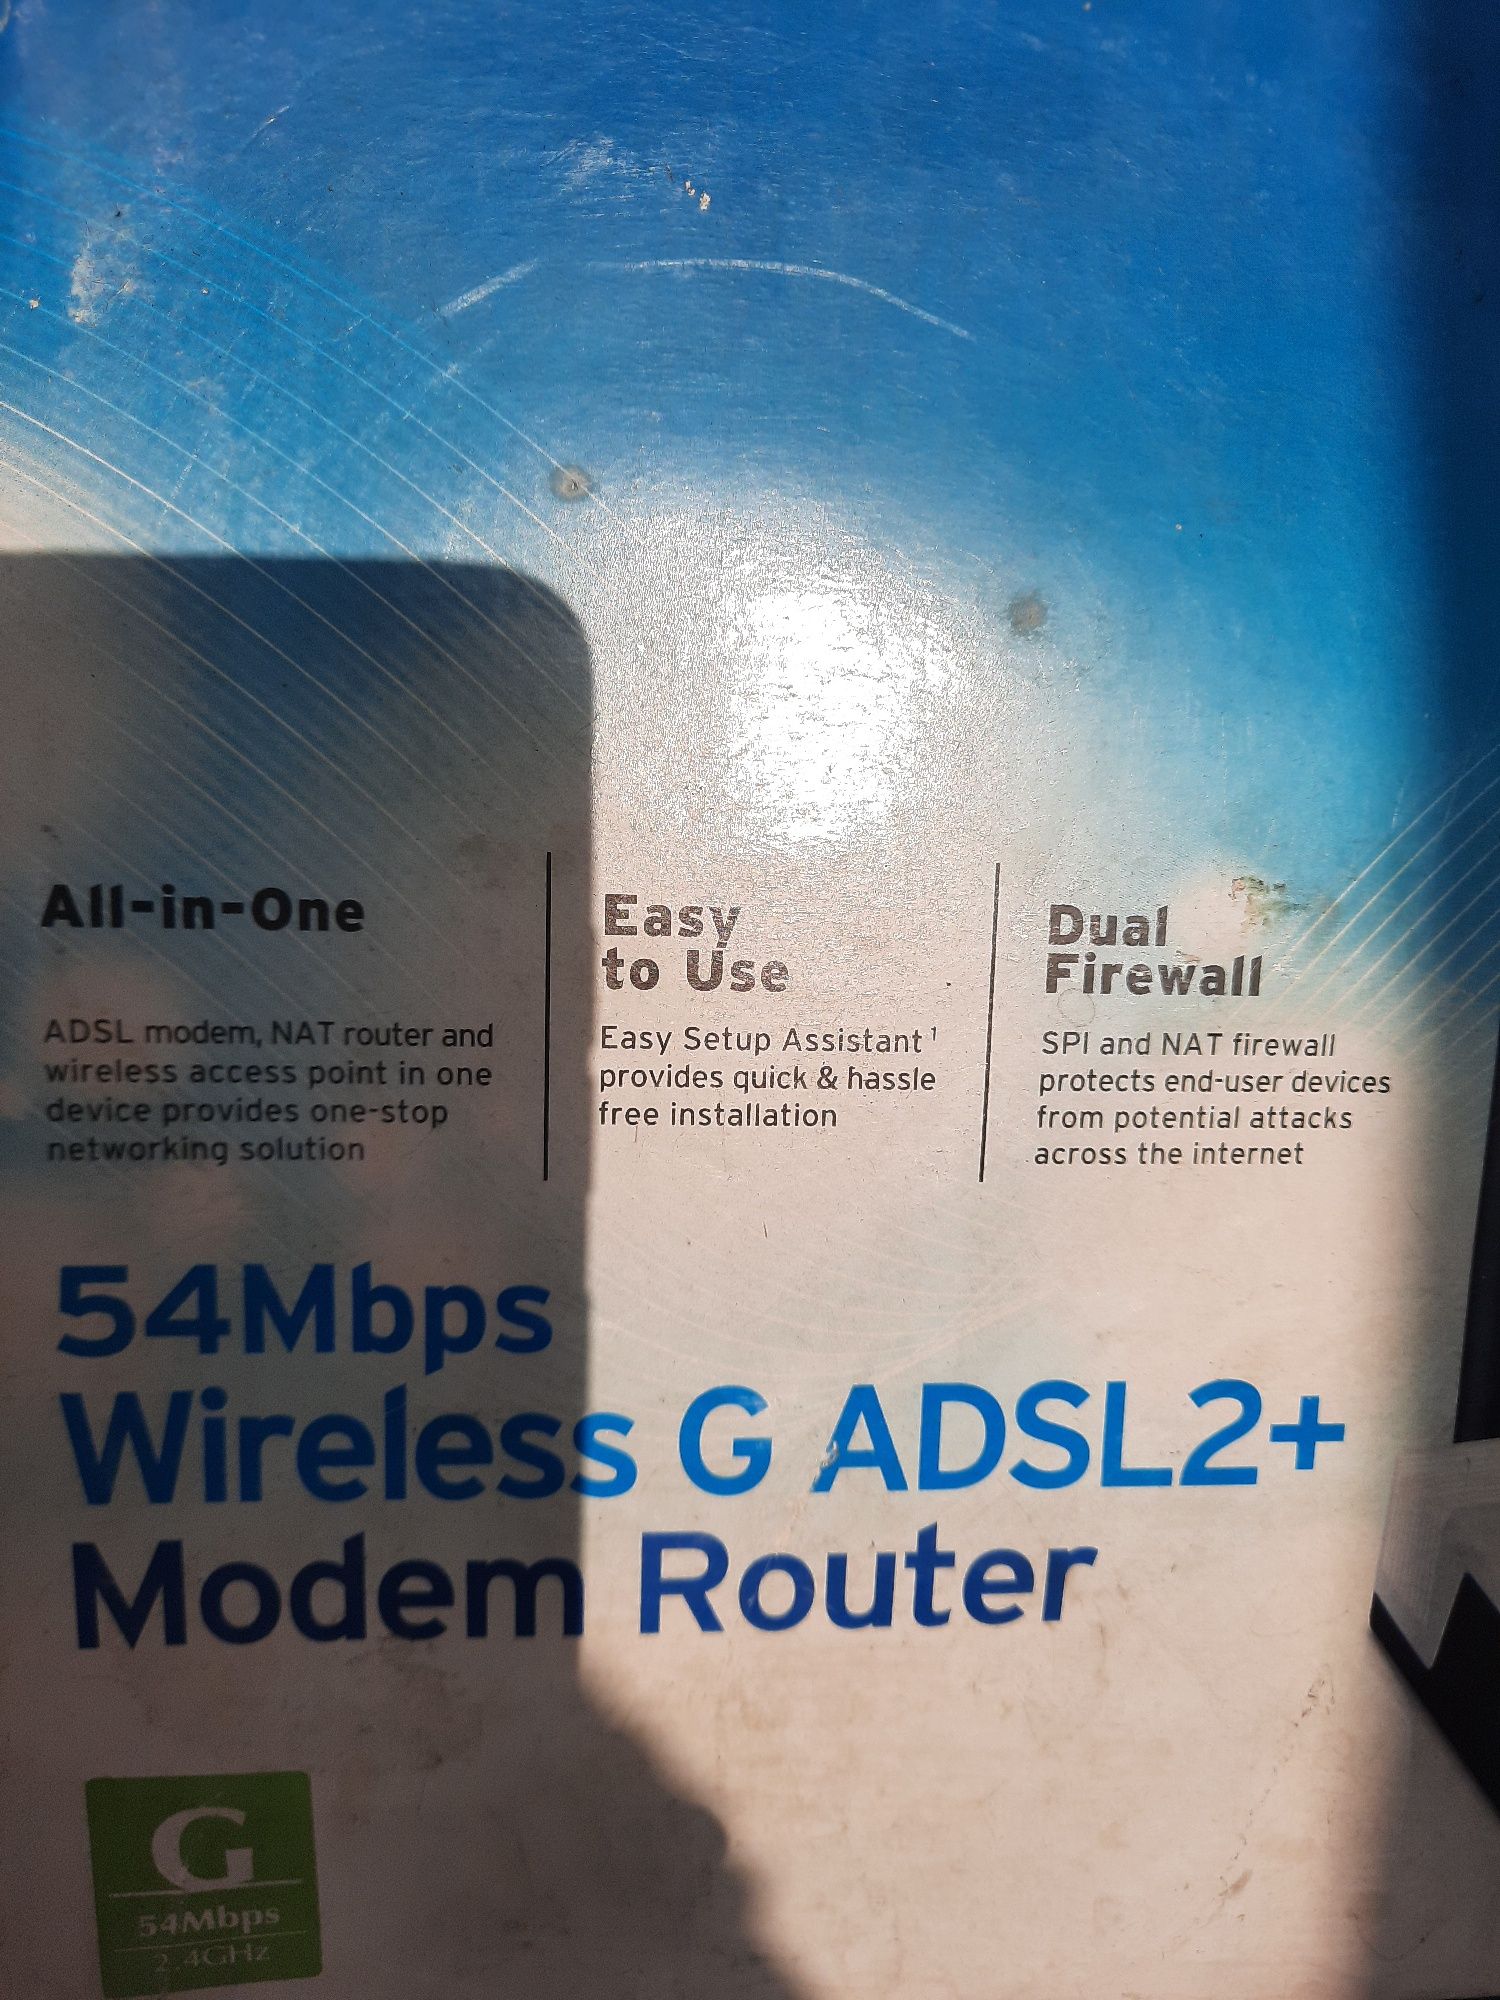 Продается ADSL модем, в отличноқм состоянии, рабочий